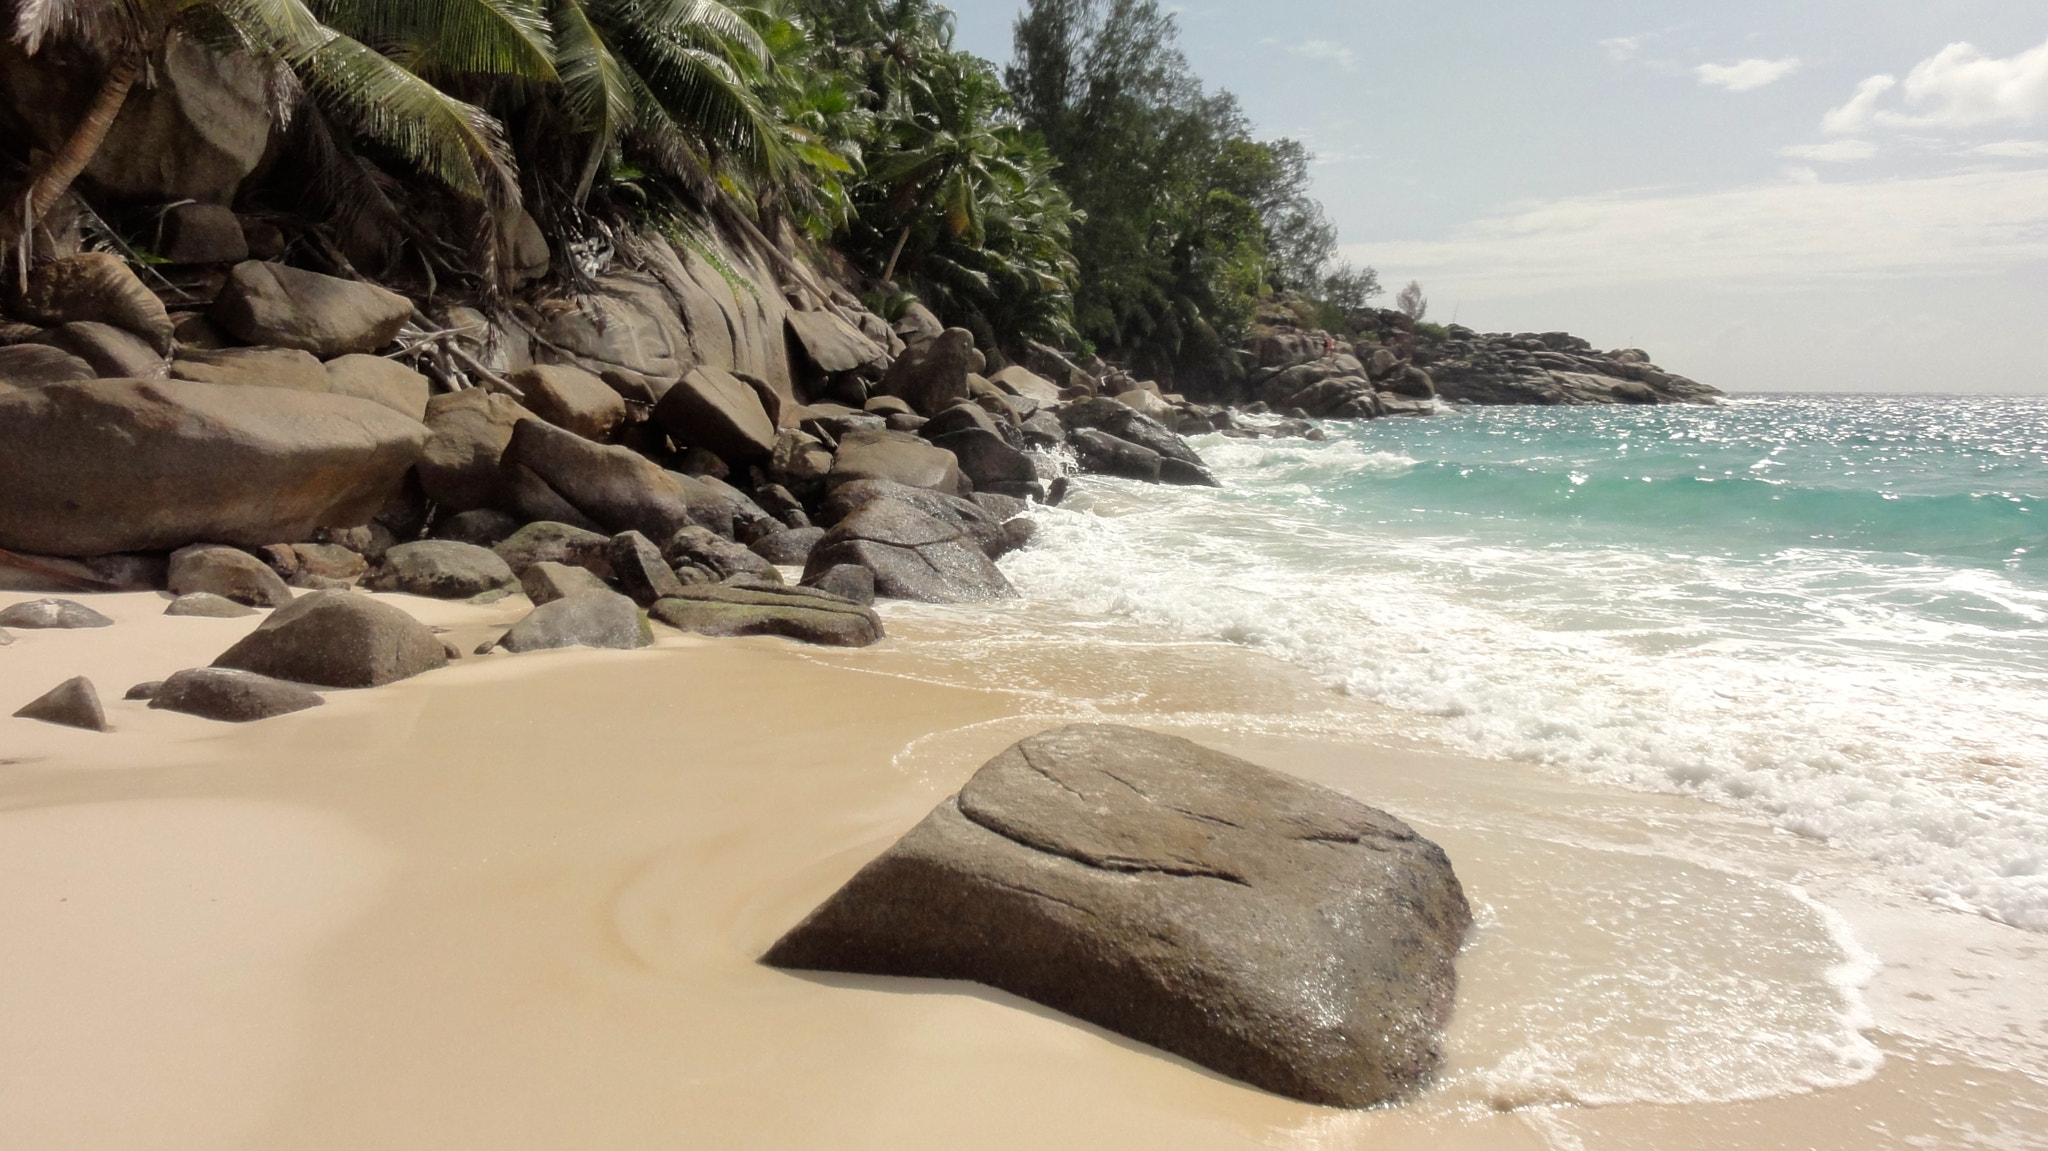 Sony DSC-HX5V sample photo. Beach on mahe, seychelles photography